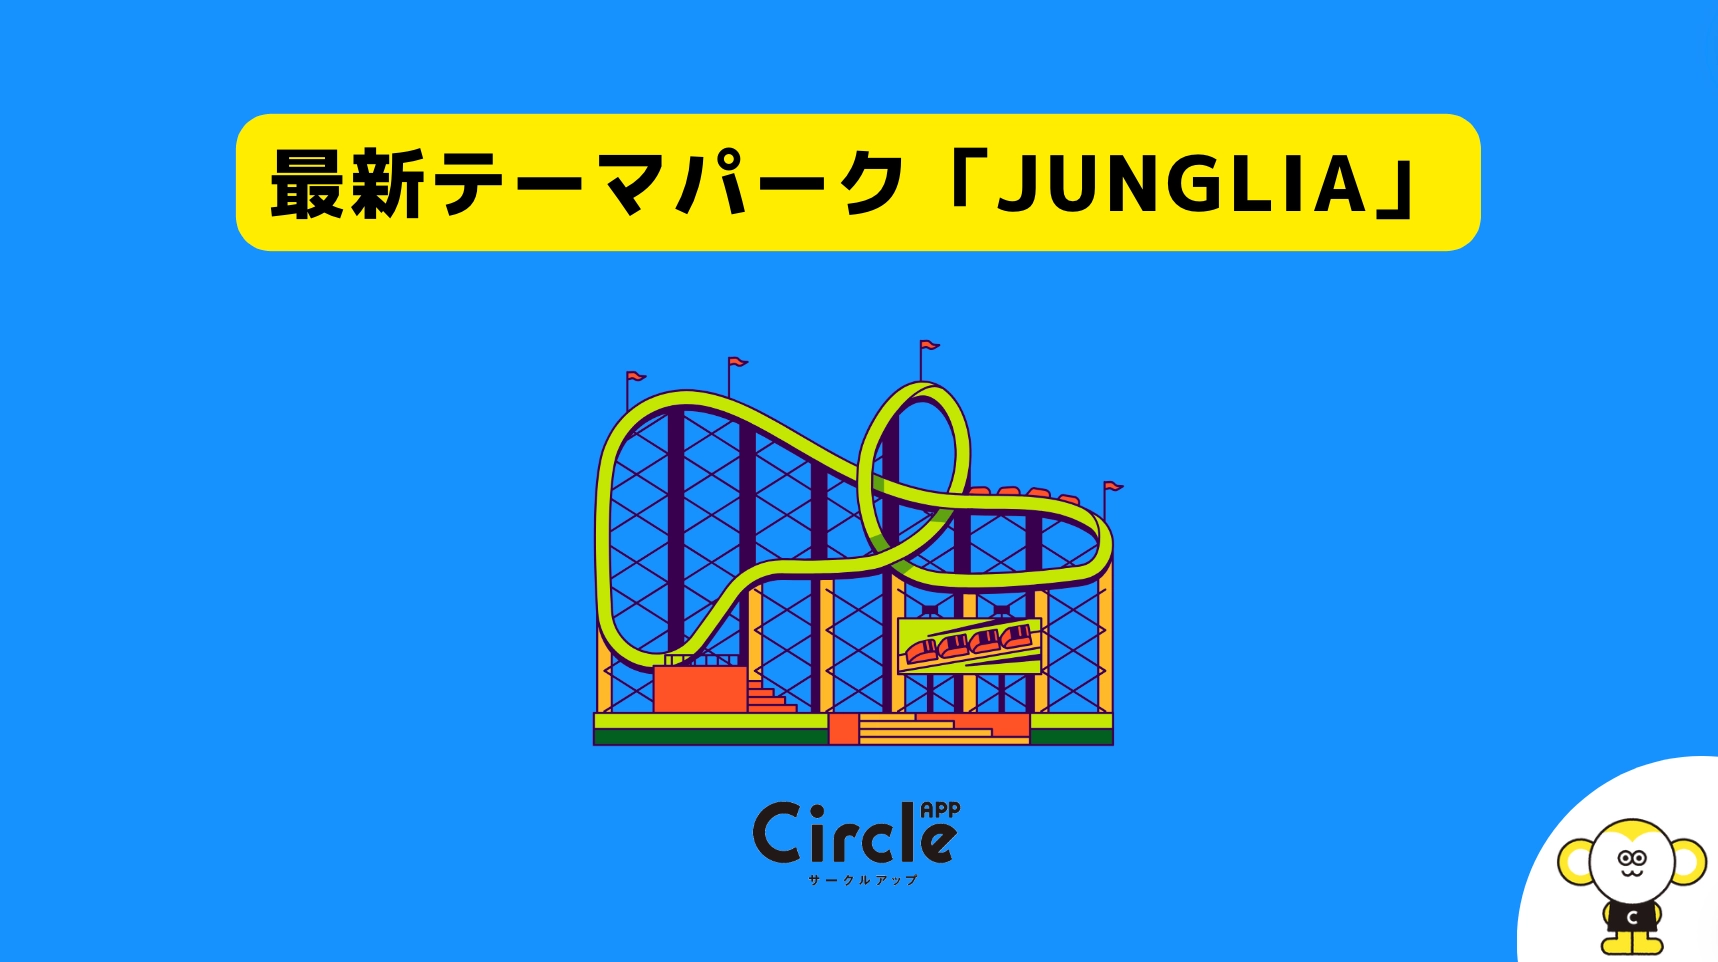 沖縄に新たにできるテーマパーク「JUNGLIA」。85%の学生が行きたいと回答。